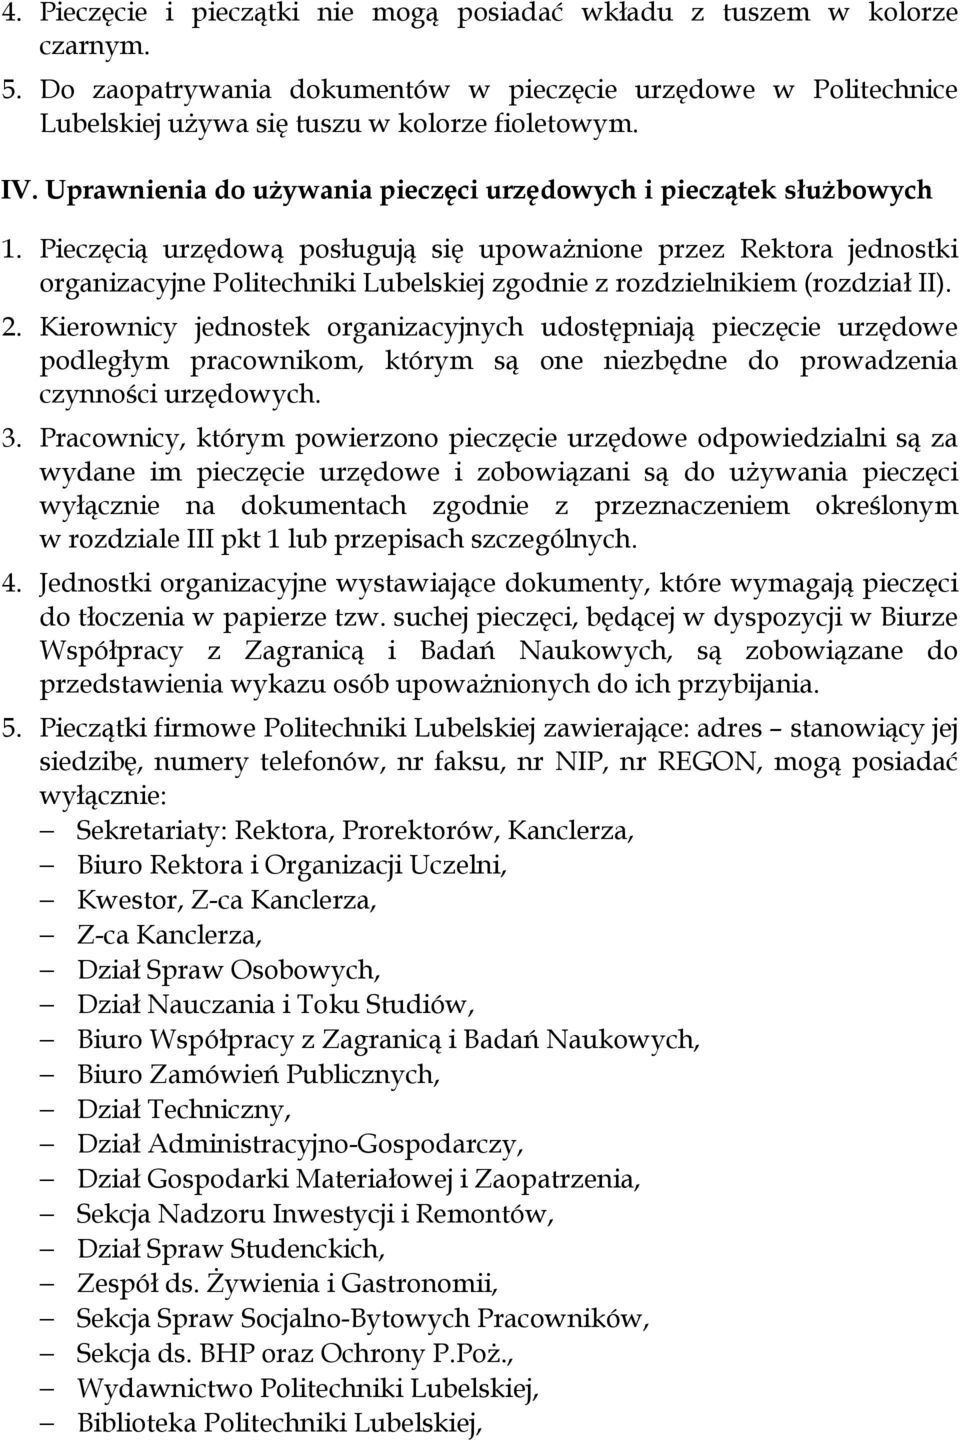 Pieczęcią urzędową posługują się upoważnione przez Rektora jednostki organizacyjne Politechniki Lubelskiej zgodnie z rozdzielnikiem (rozdział II). 2.